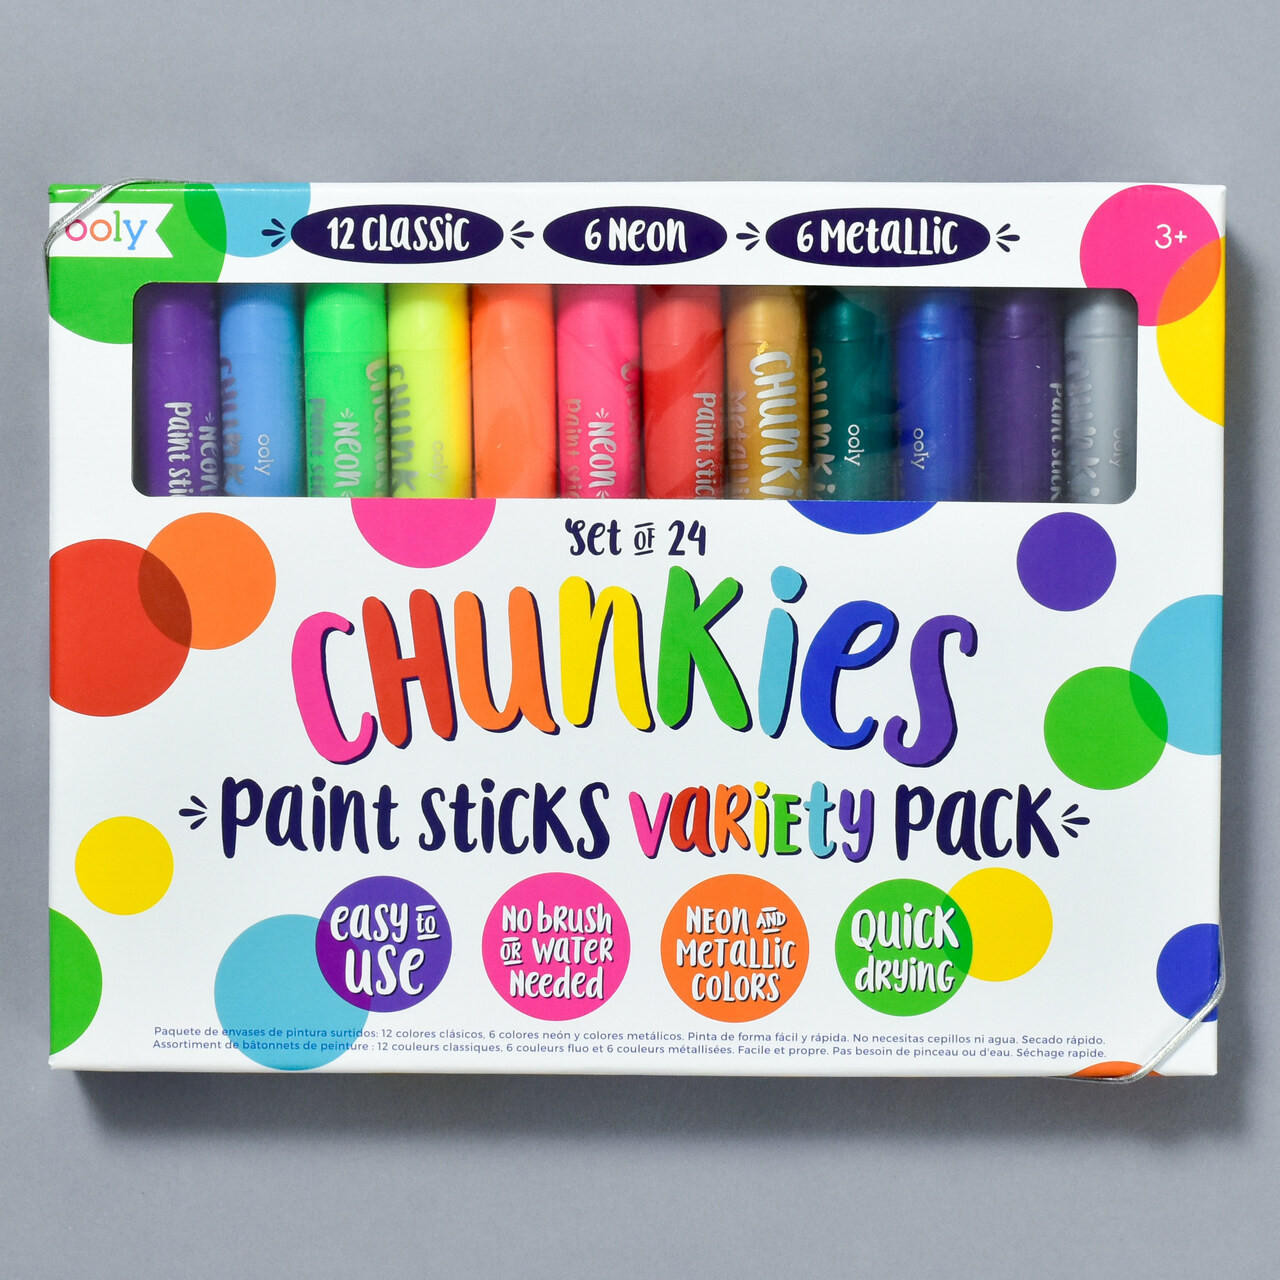 Ooly Chunkies Paint Sticks - Set of 6